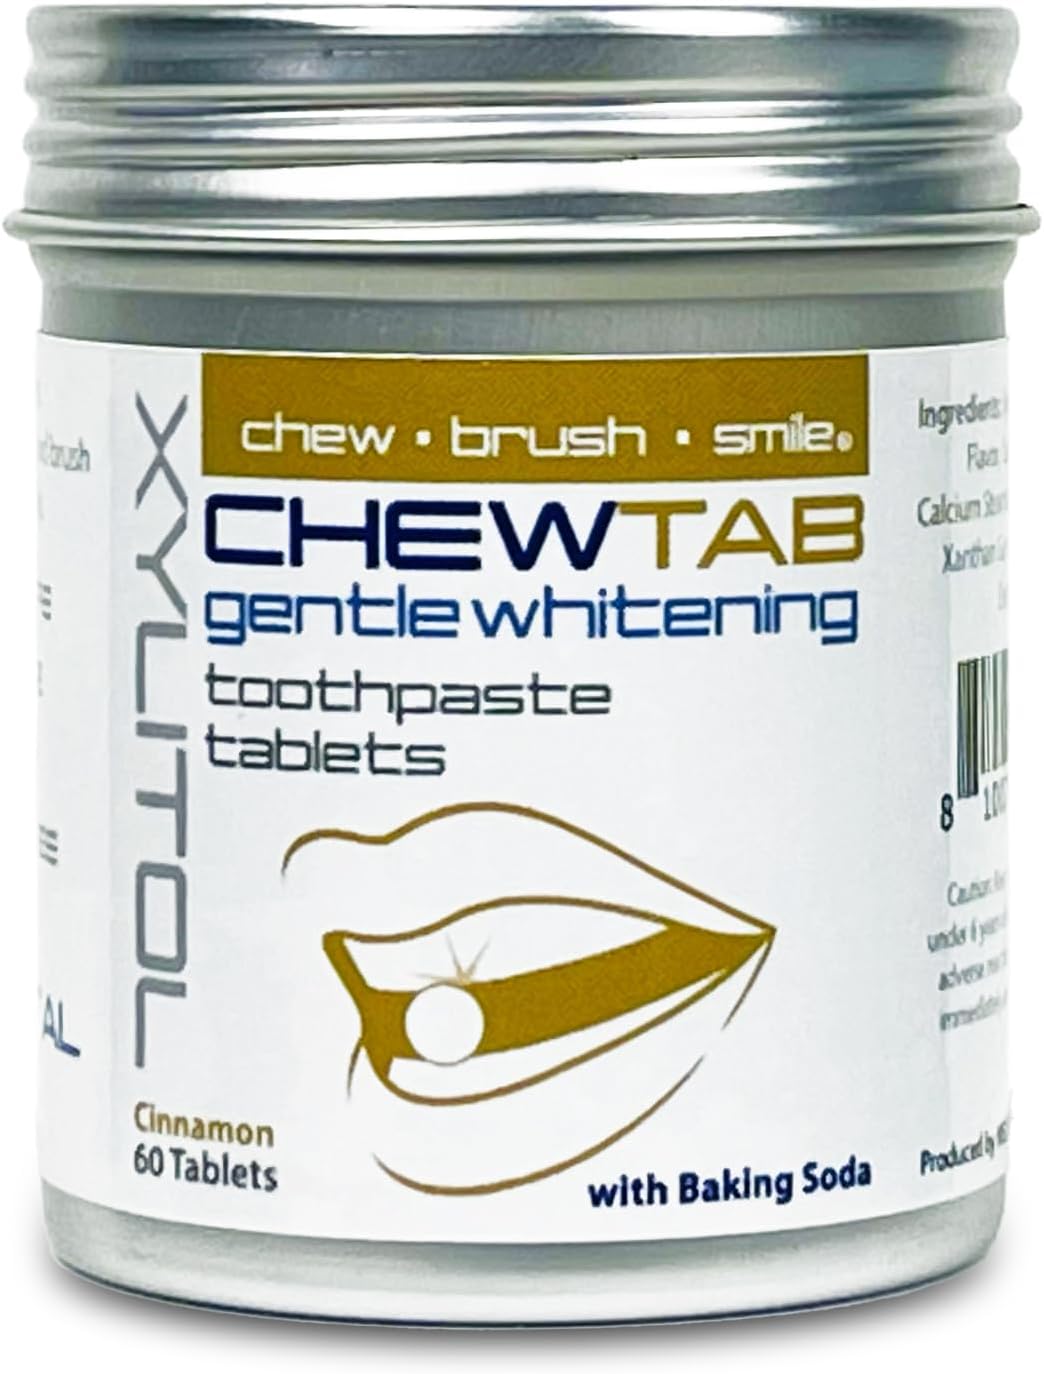 Weldental Chewtab Gentle Whitening Toothpaste Tablets Cinnamon